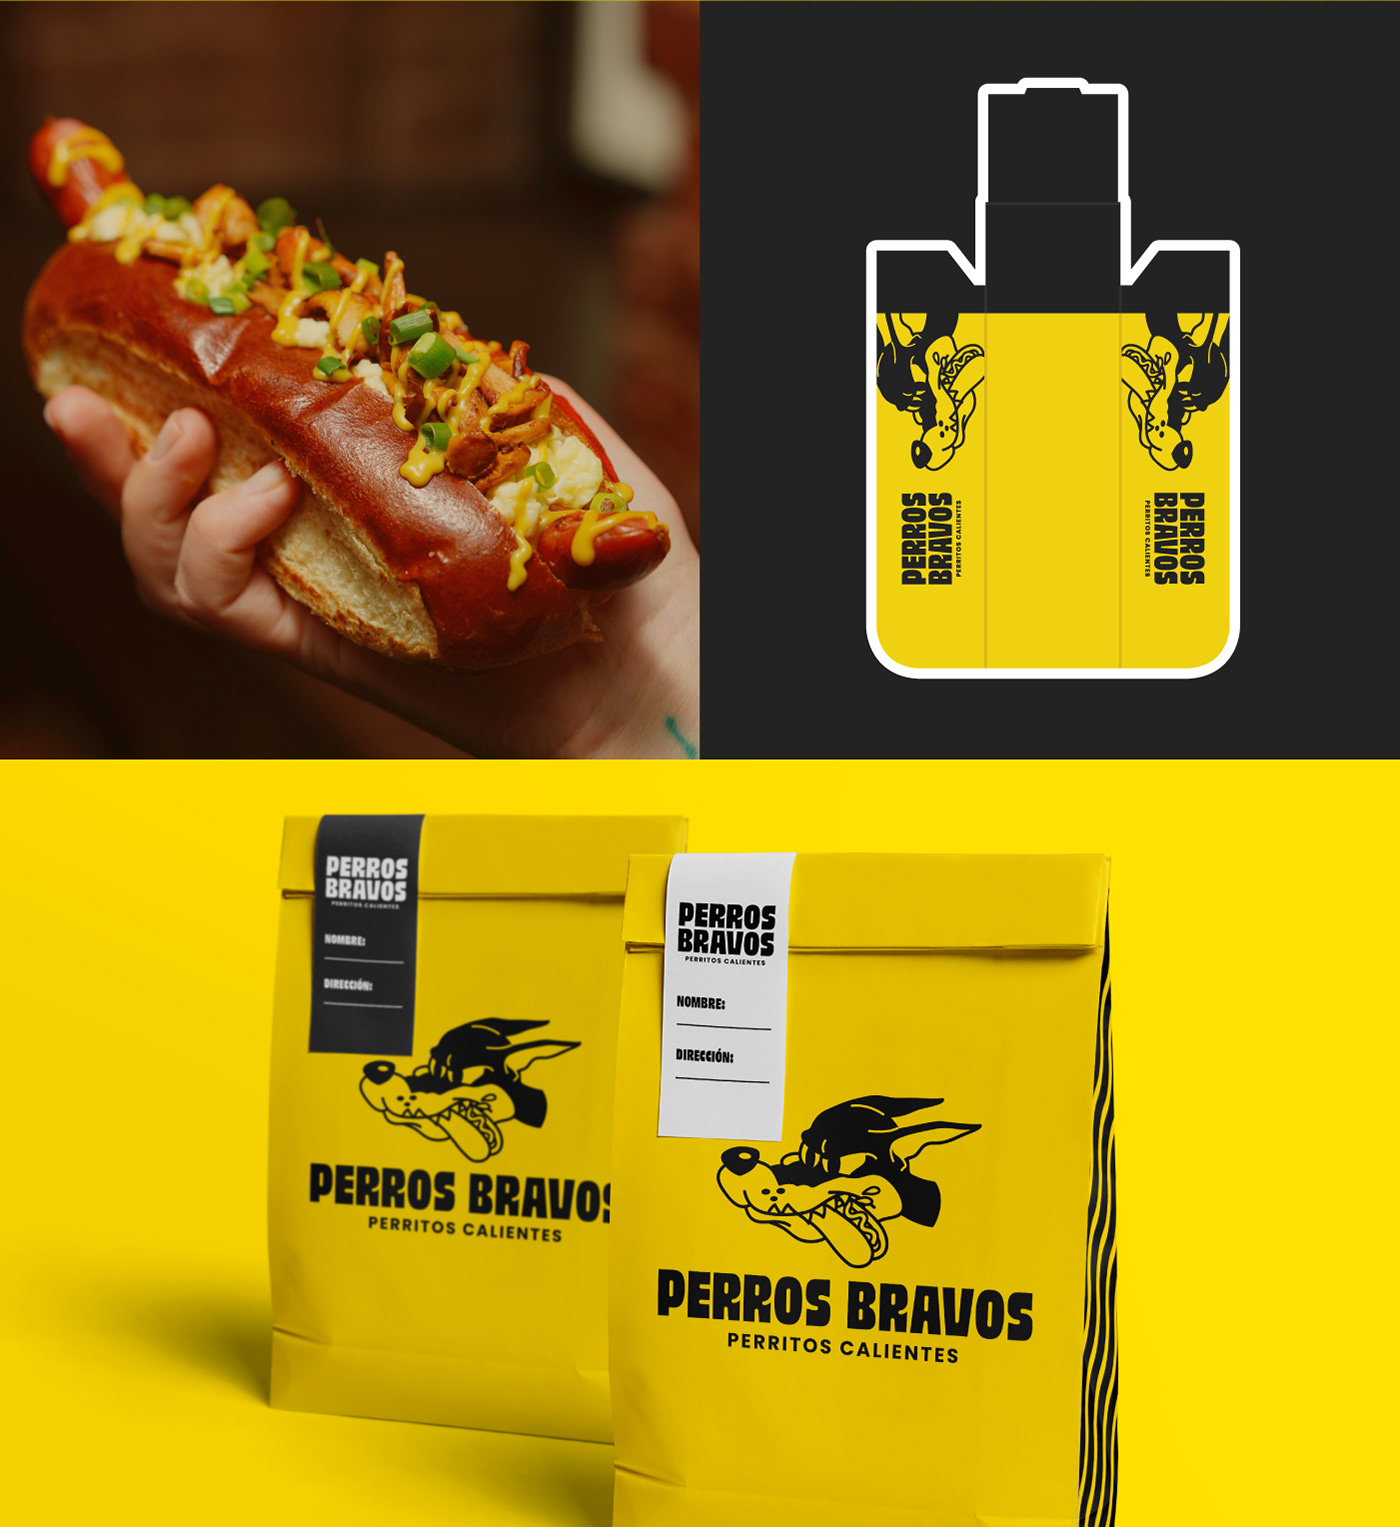 Fast food hotdog restaurant brand identity Logotype visual identity adobe illustrator Brand Design Adobe Photoshop Food 